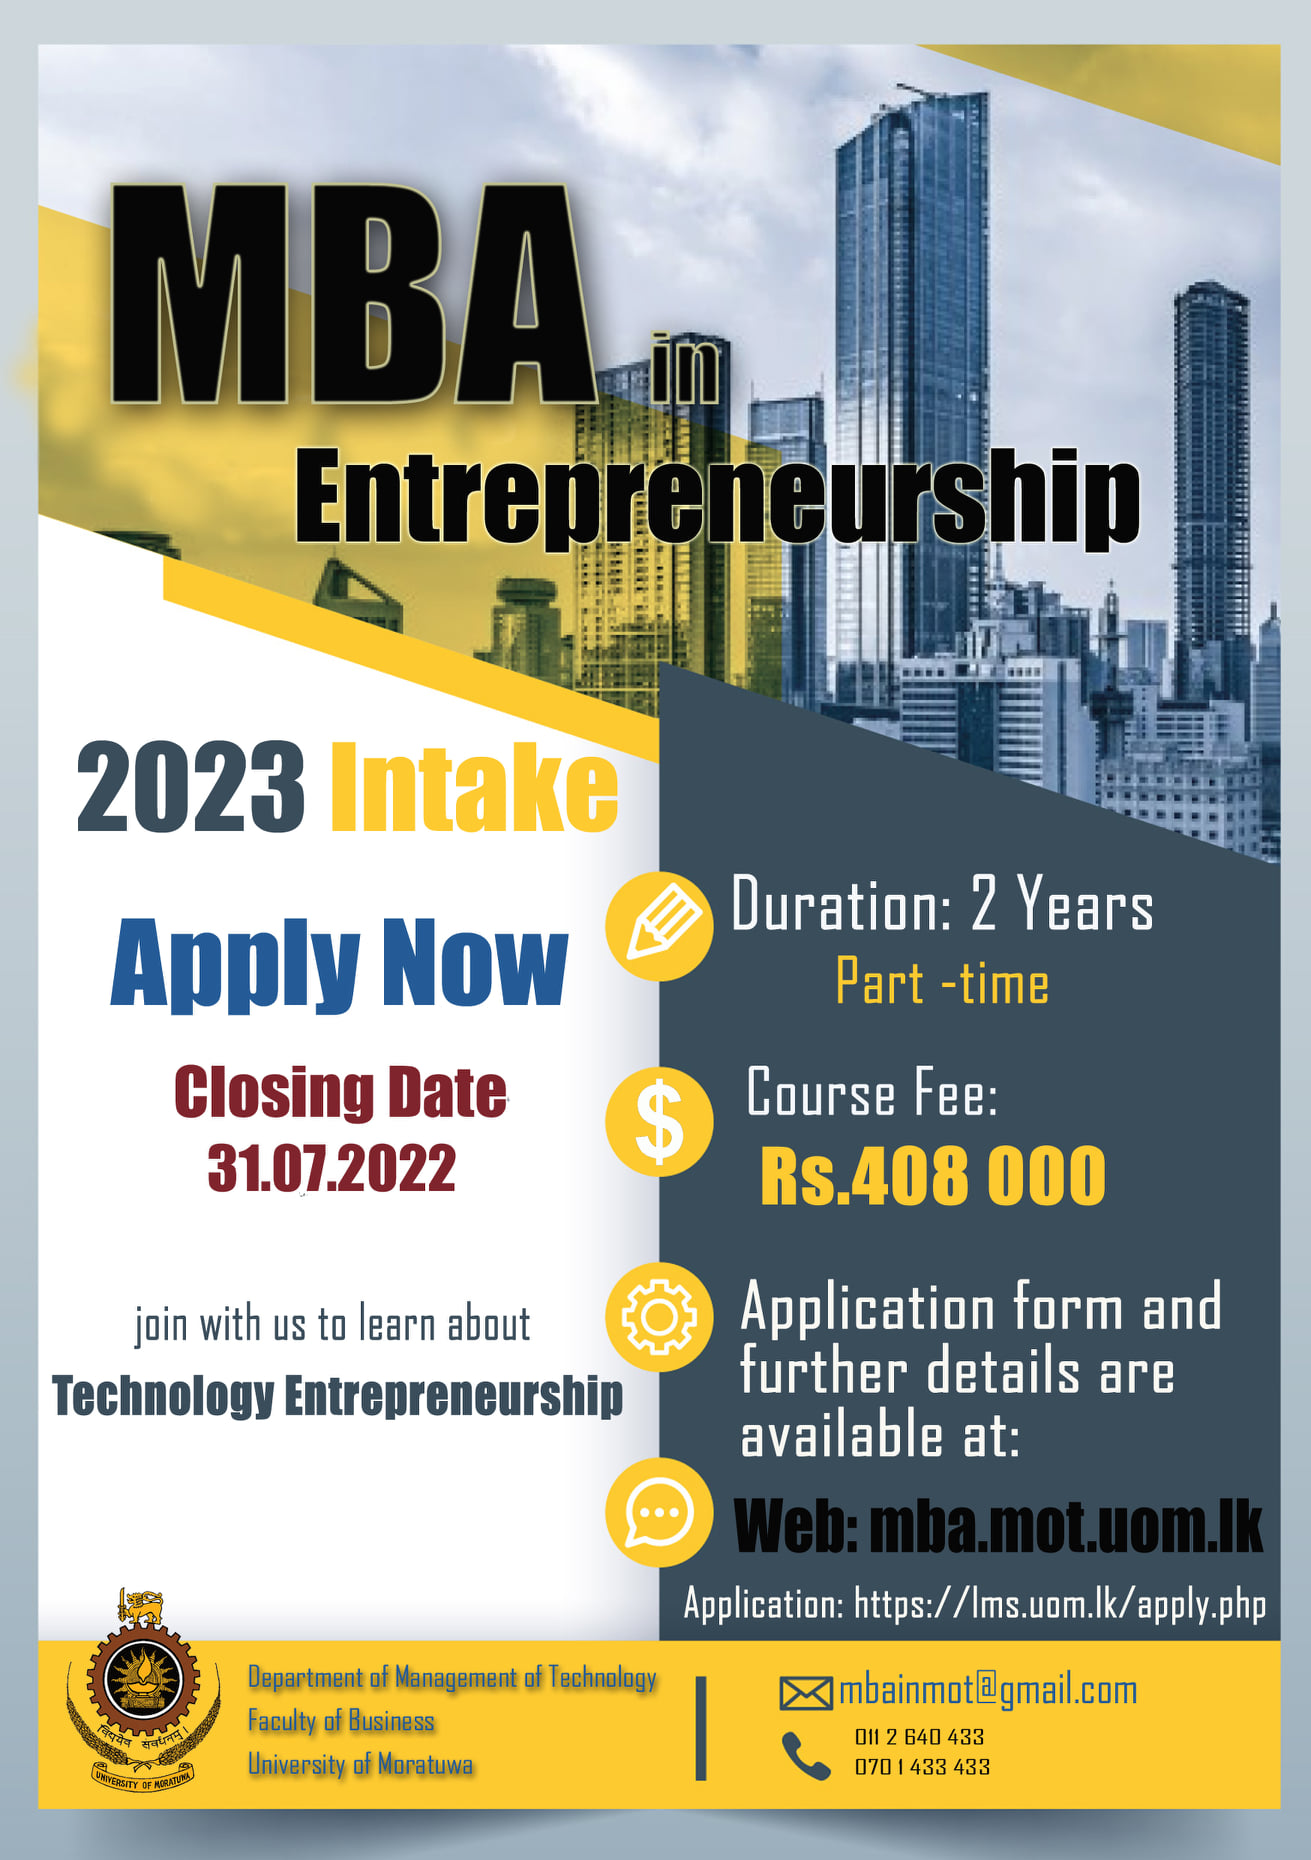 MBA in Entrepreneurship